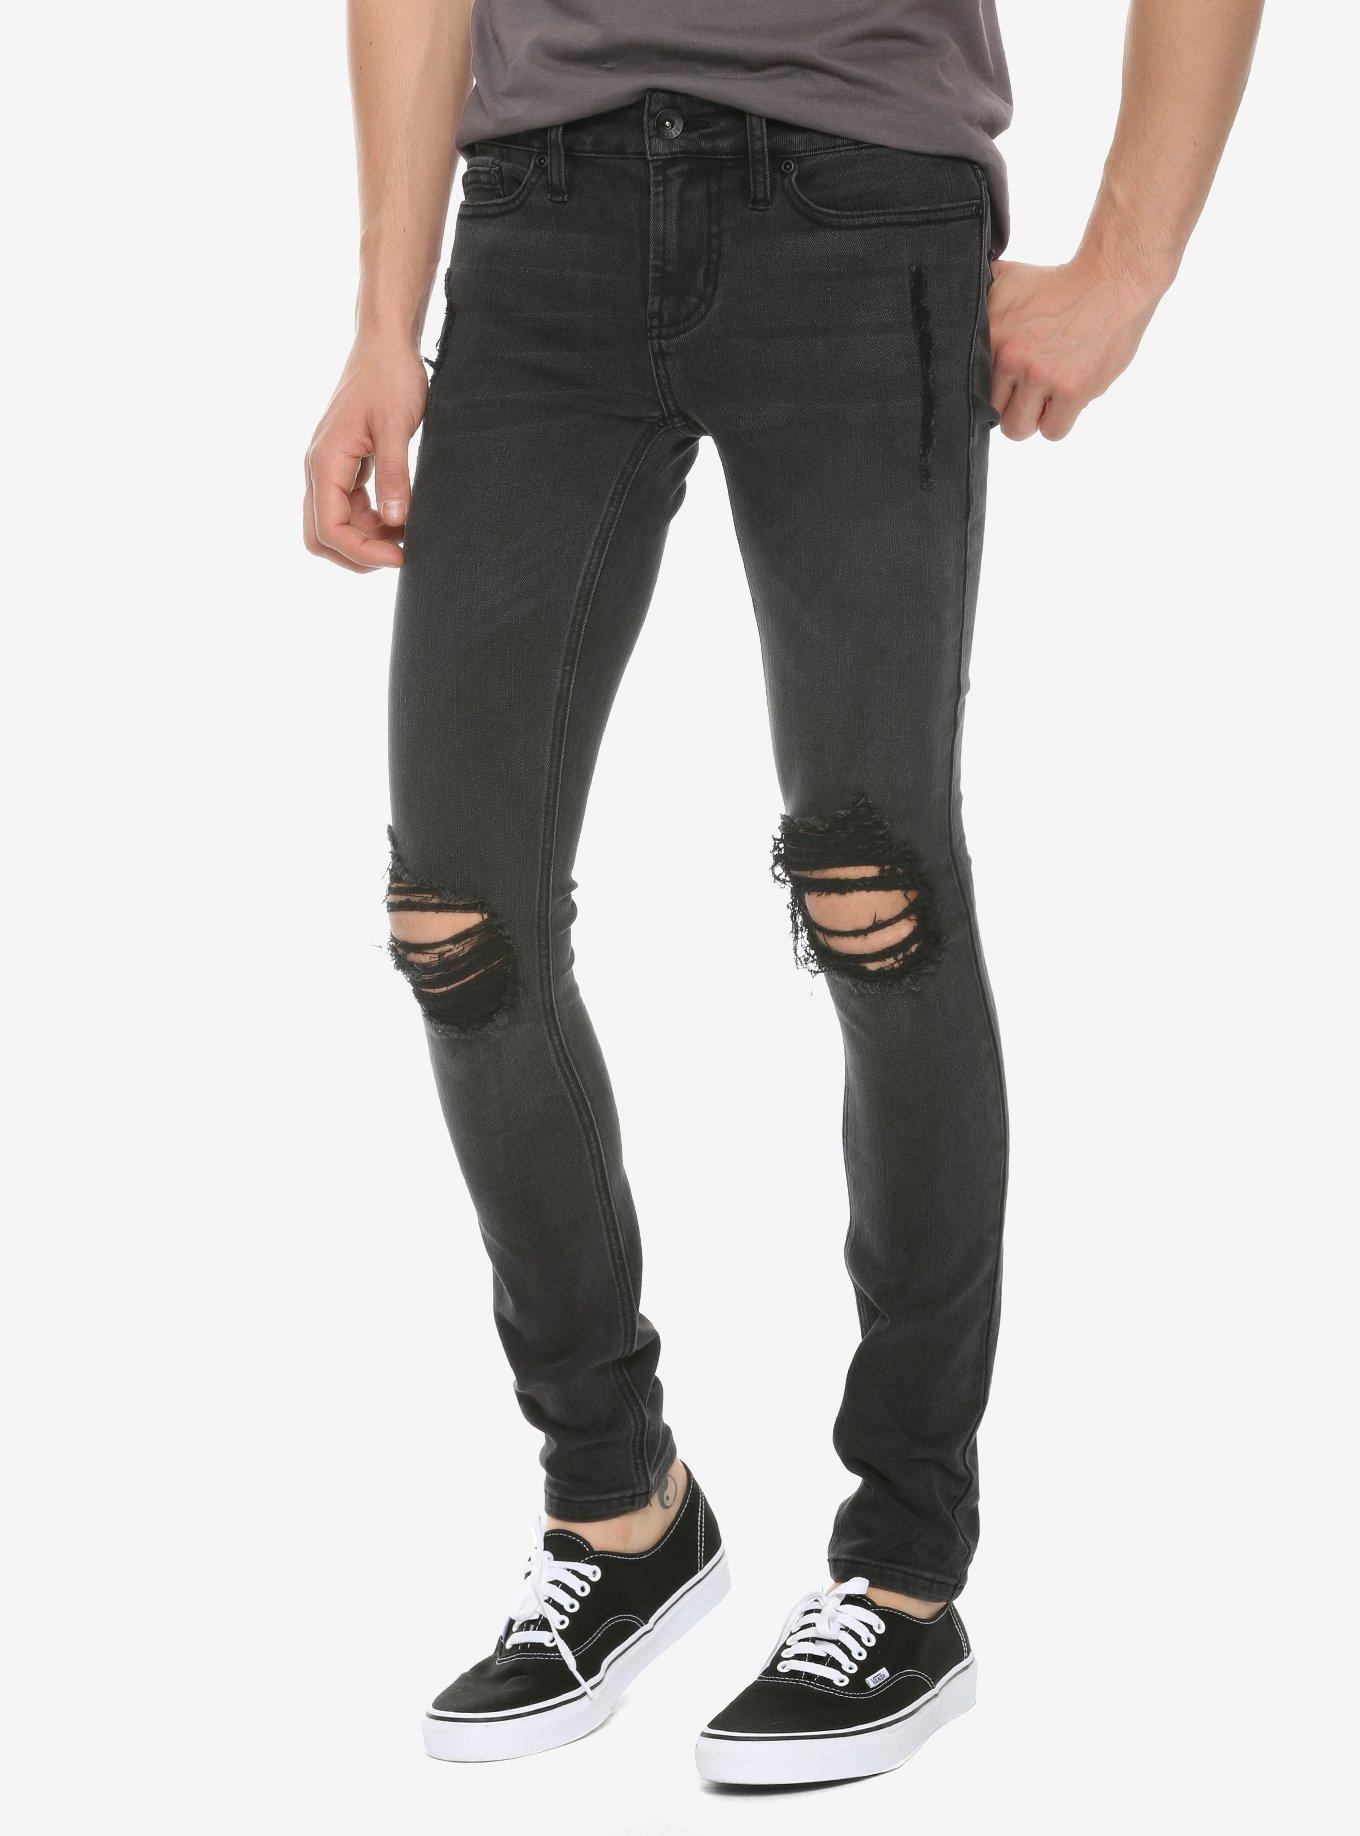 HT Denim Black Washed & Destructed Super Skinny Jeans | Hot Topic